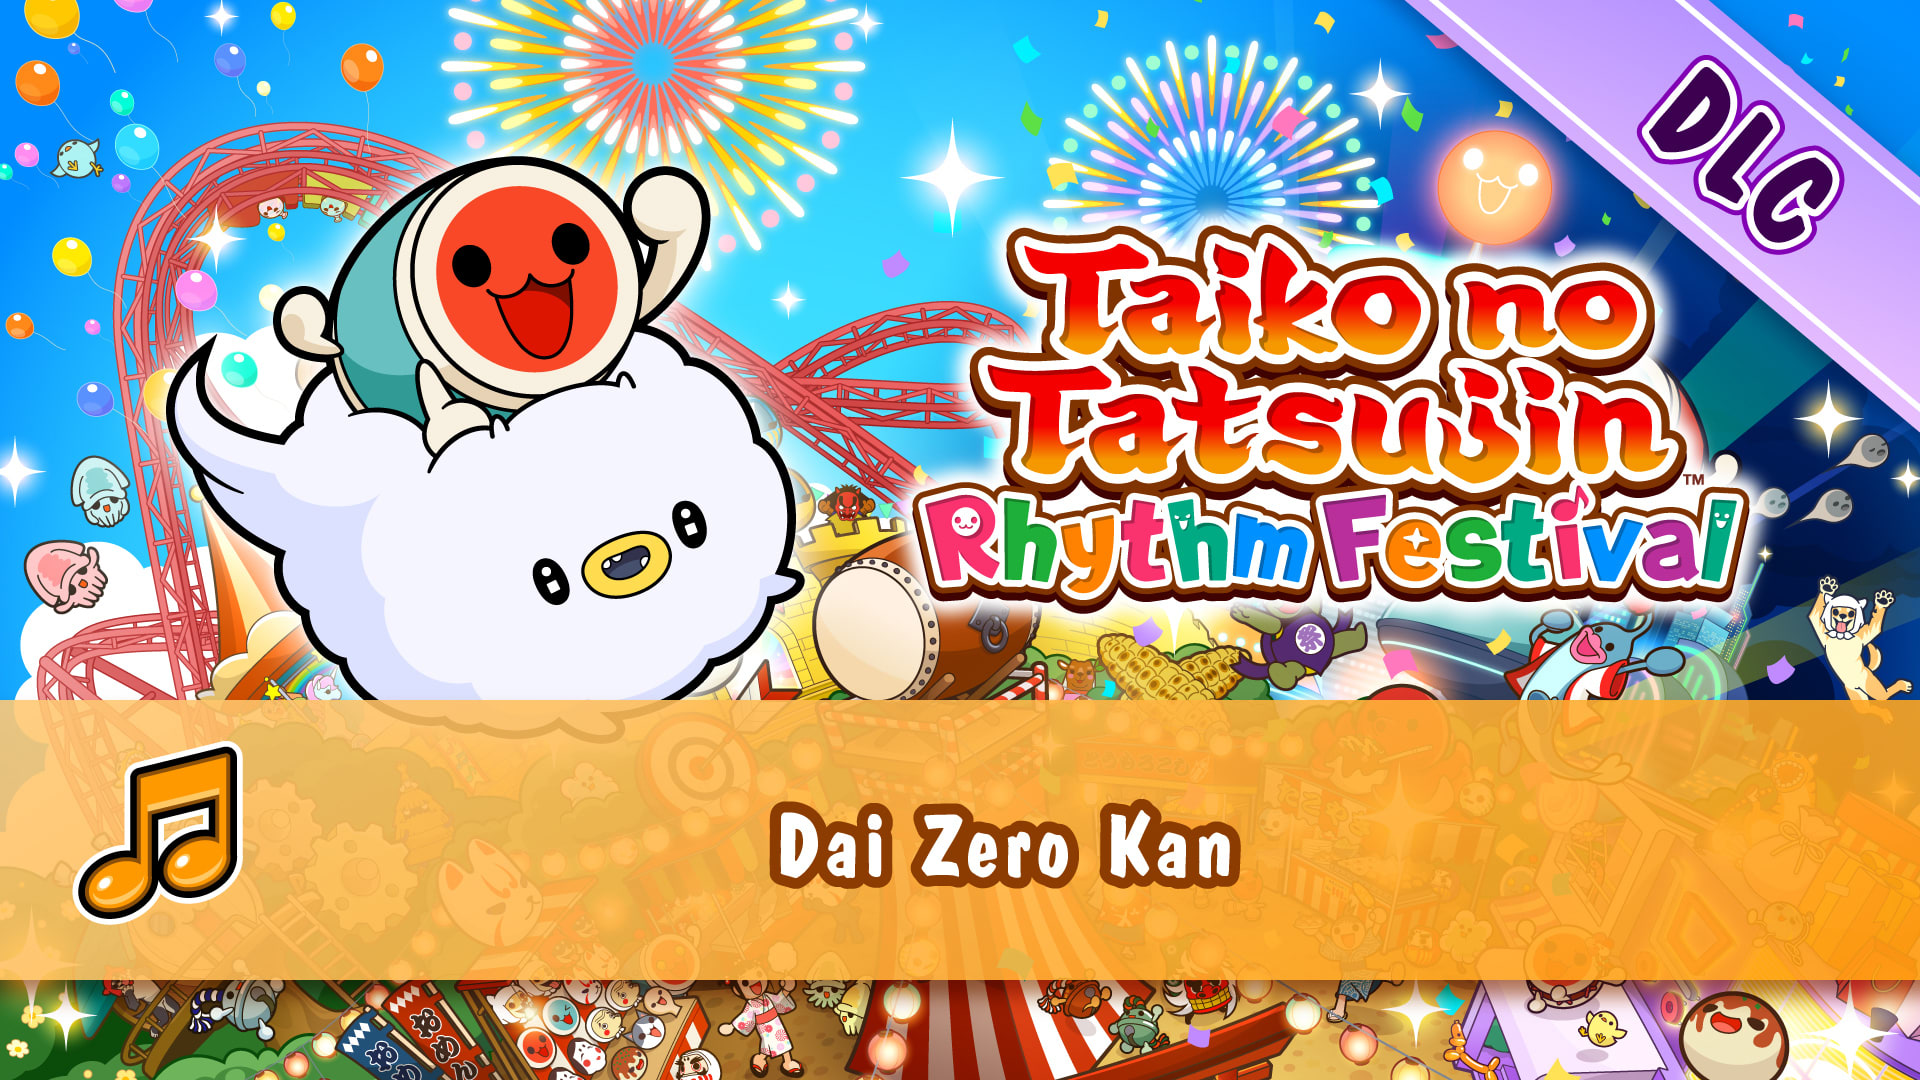 Taiko no Tatsujin: Rhythm Festival - Dai Zero Kan